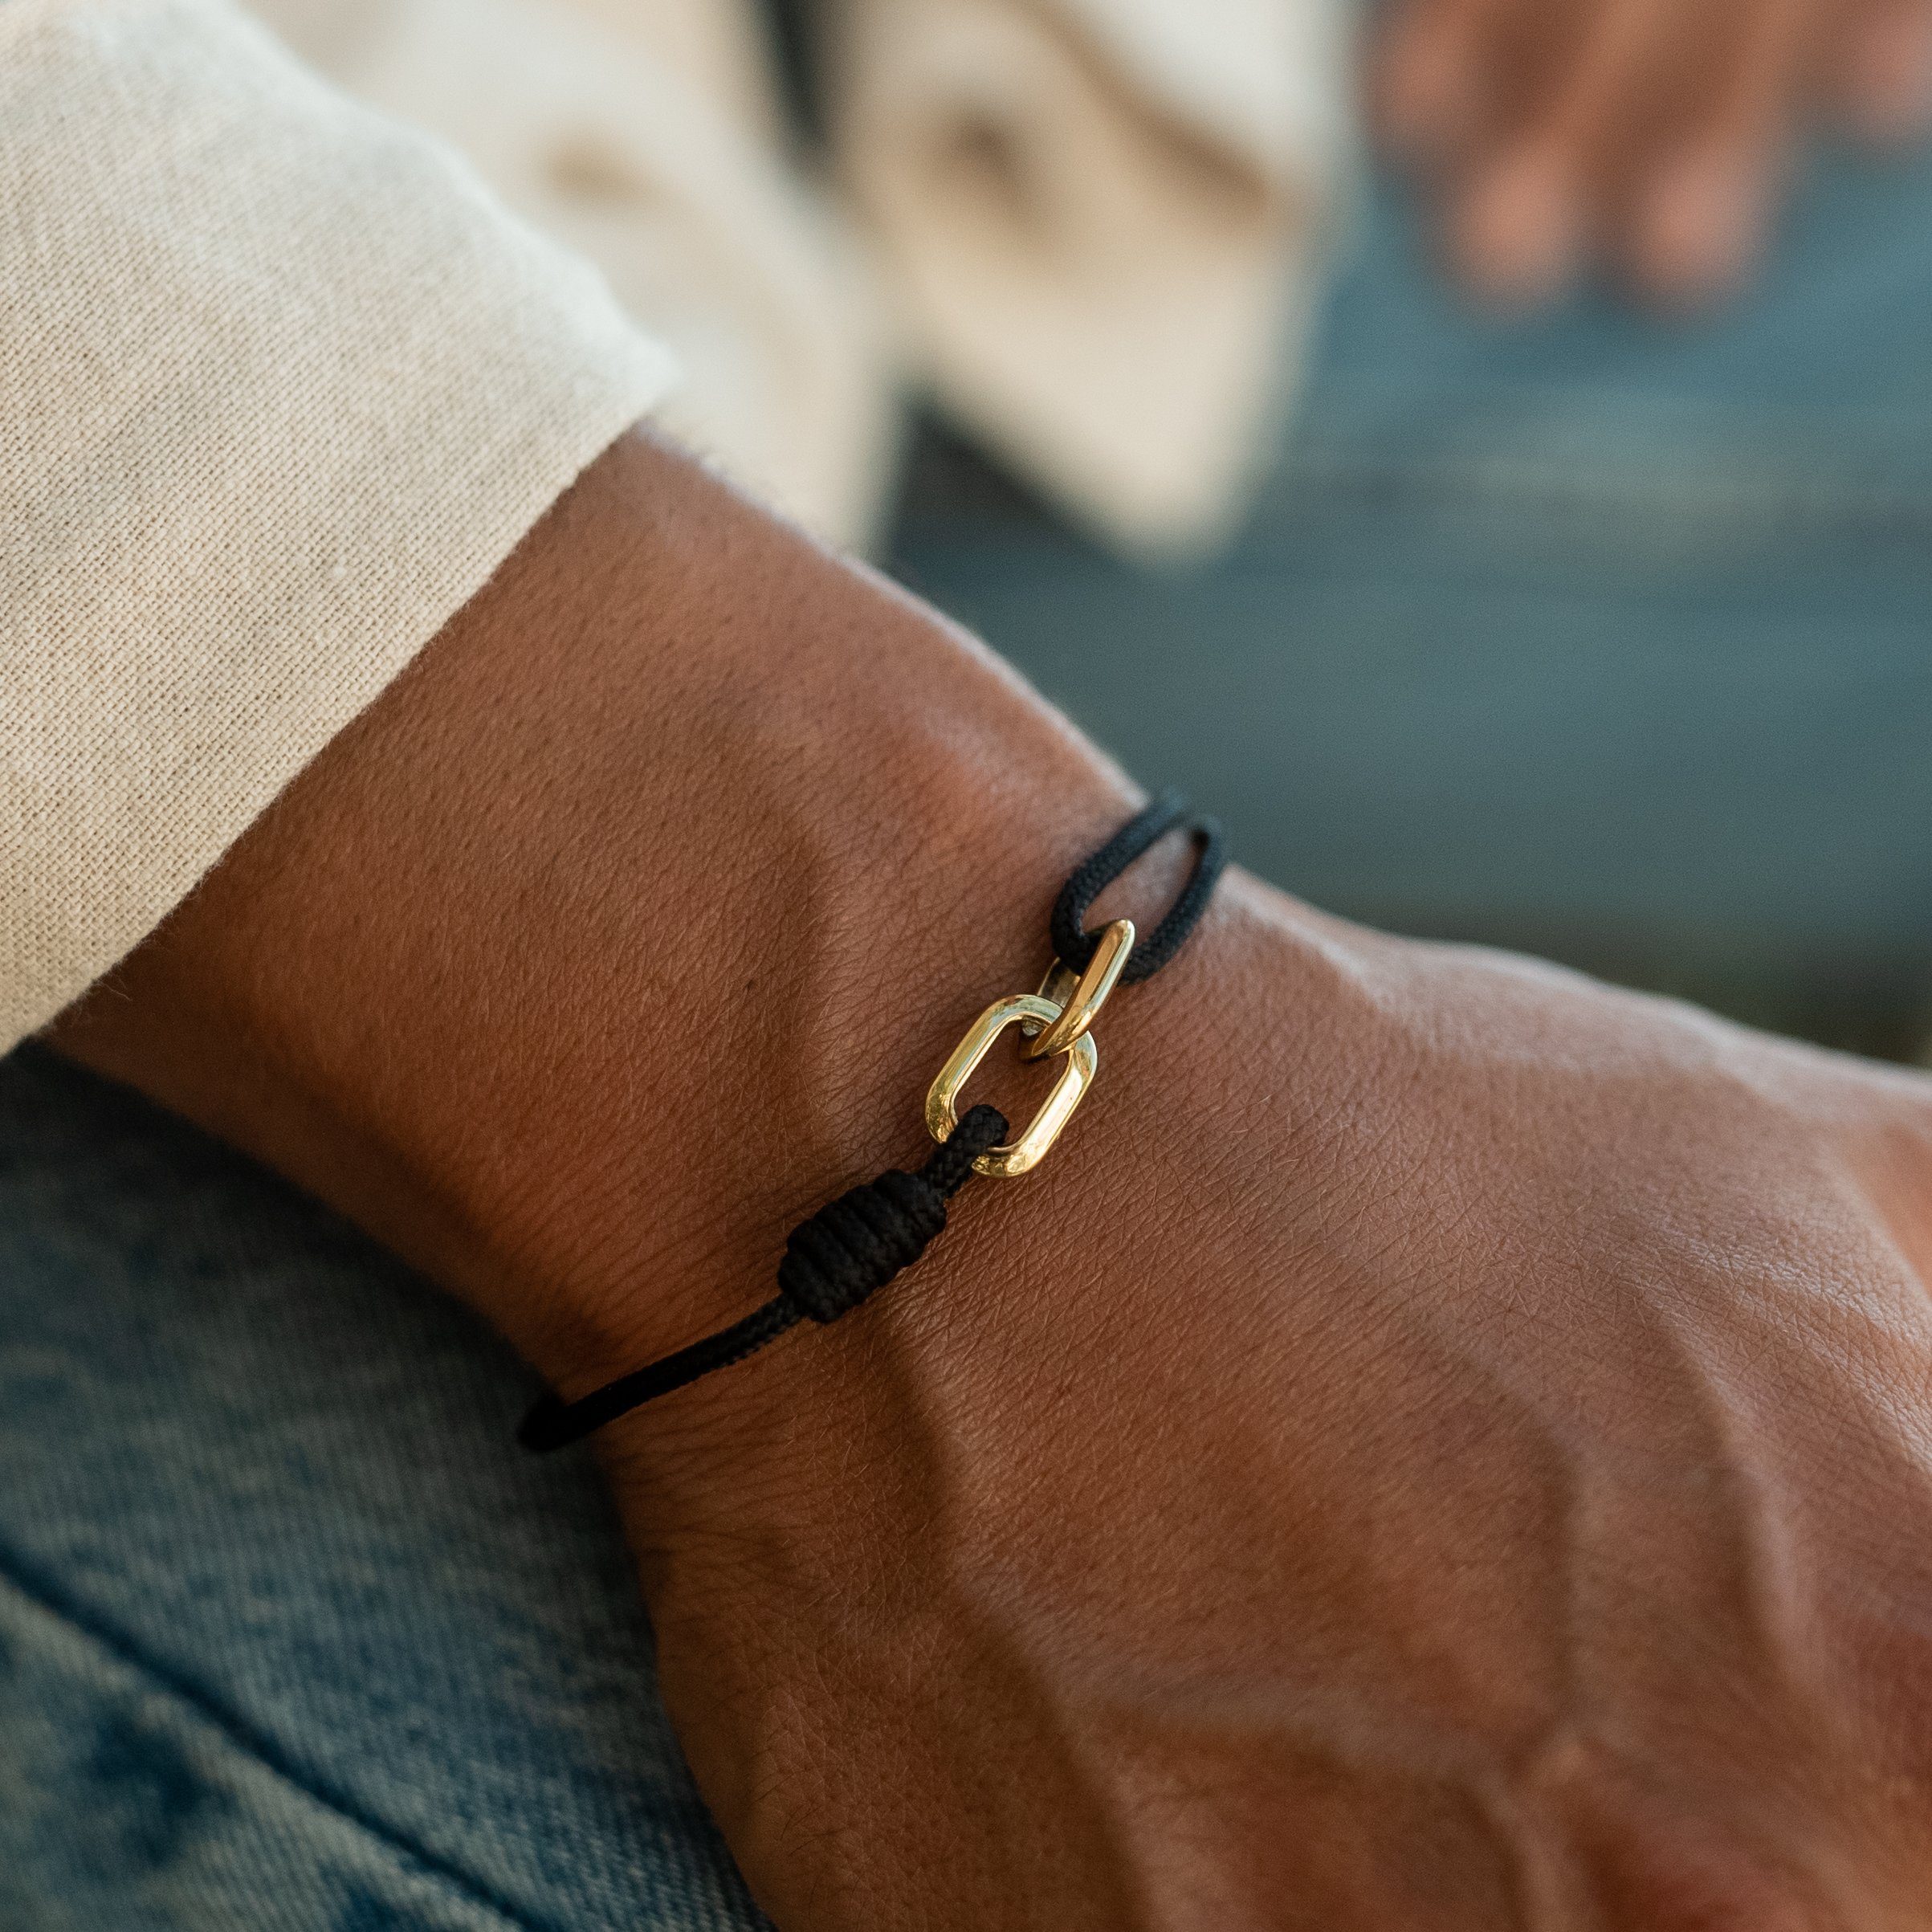 Schwarz Damen Handgemacht, Armband Armband Wasserfest Gold Minimalistisches Made Armband Armband Surfer Armband Herren Segeltau by Verstellbar Nami